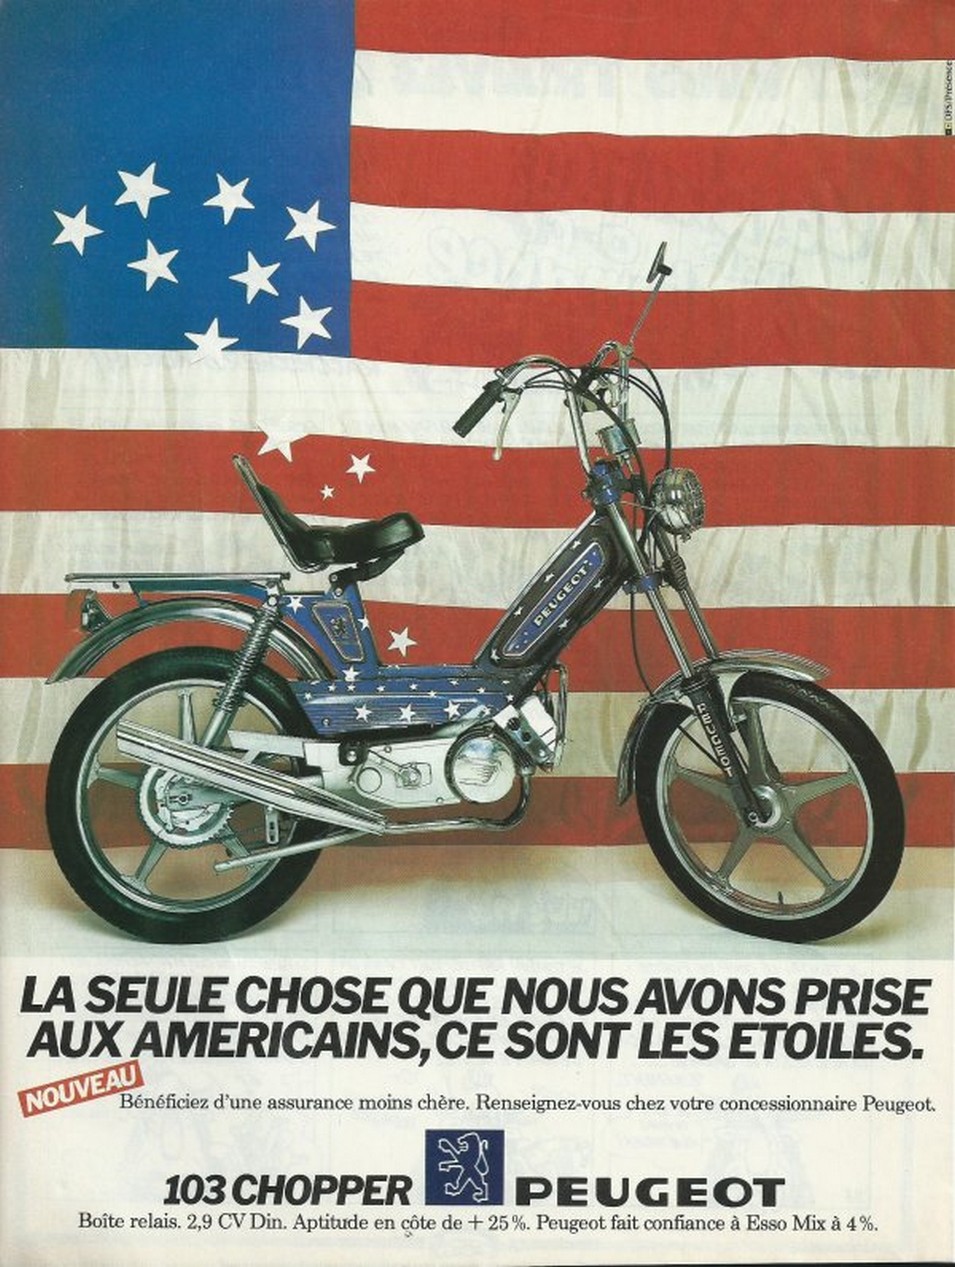 Peugeot Motocycles visuel ancienne publicite 5 - Vintage